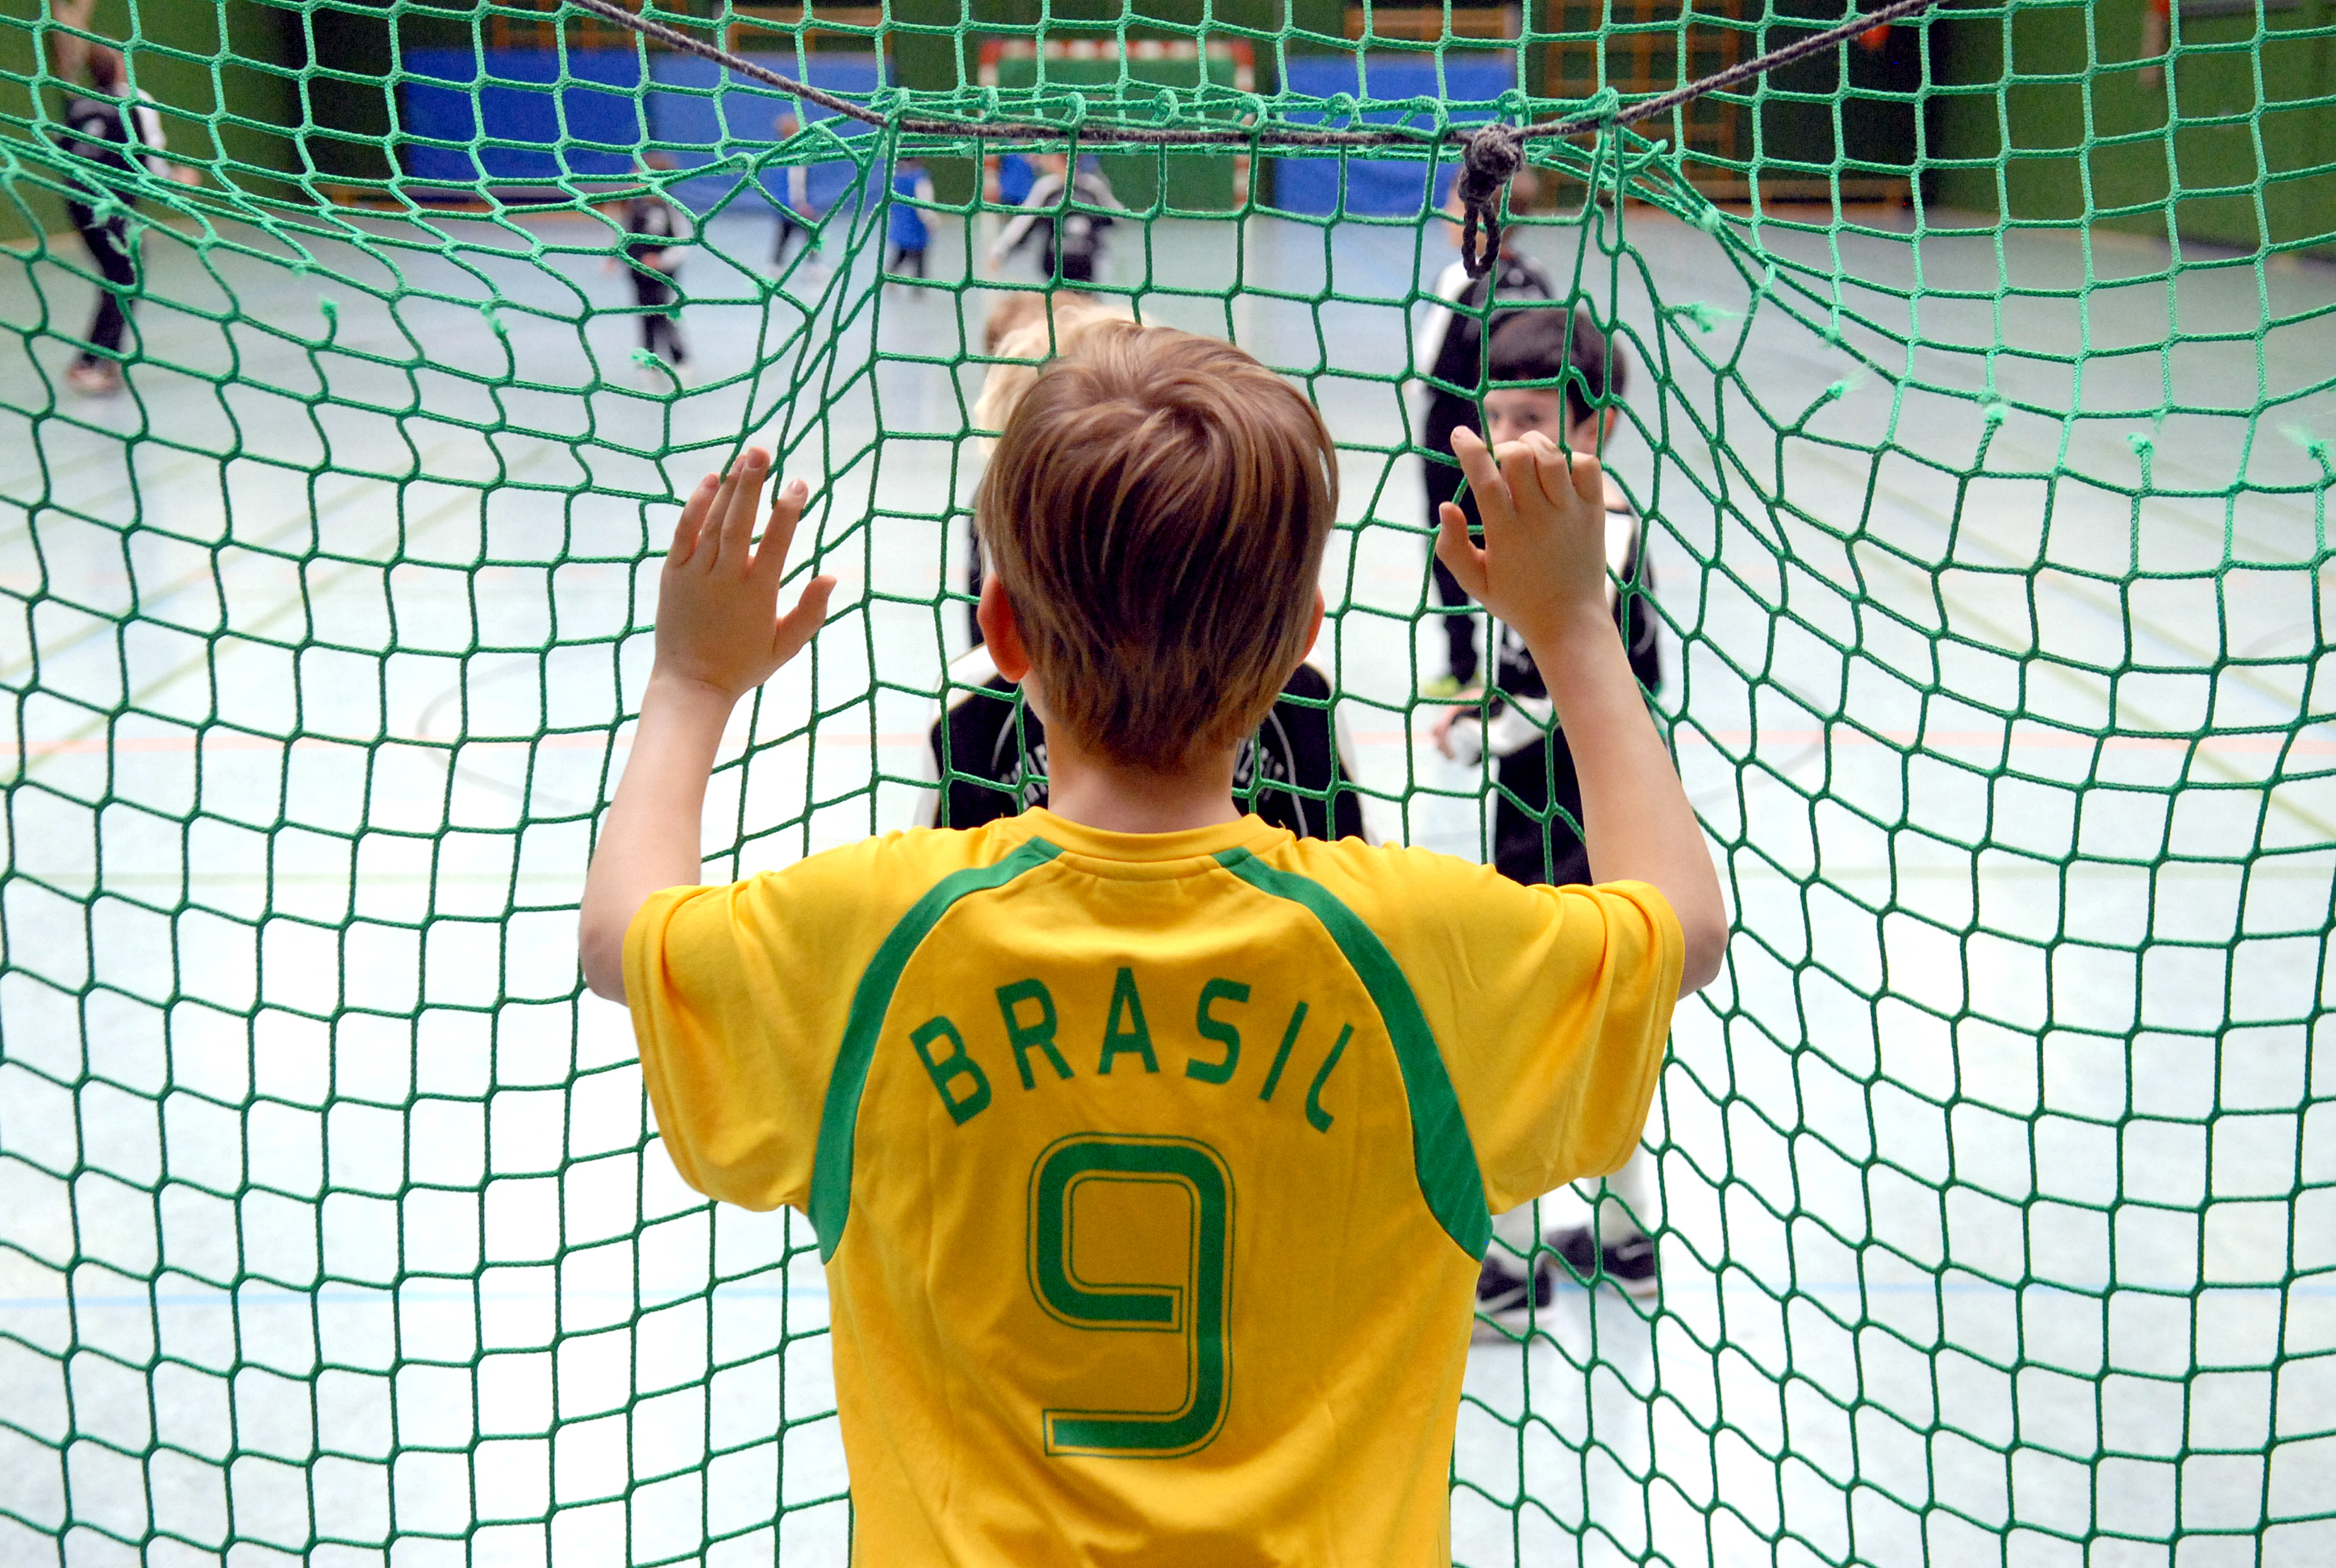 Kind mit Brasilien-Trikot steht hinter einem Tornetz und sieht anderen Kindern beim Fußball zu